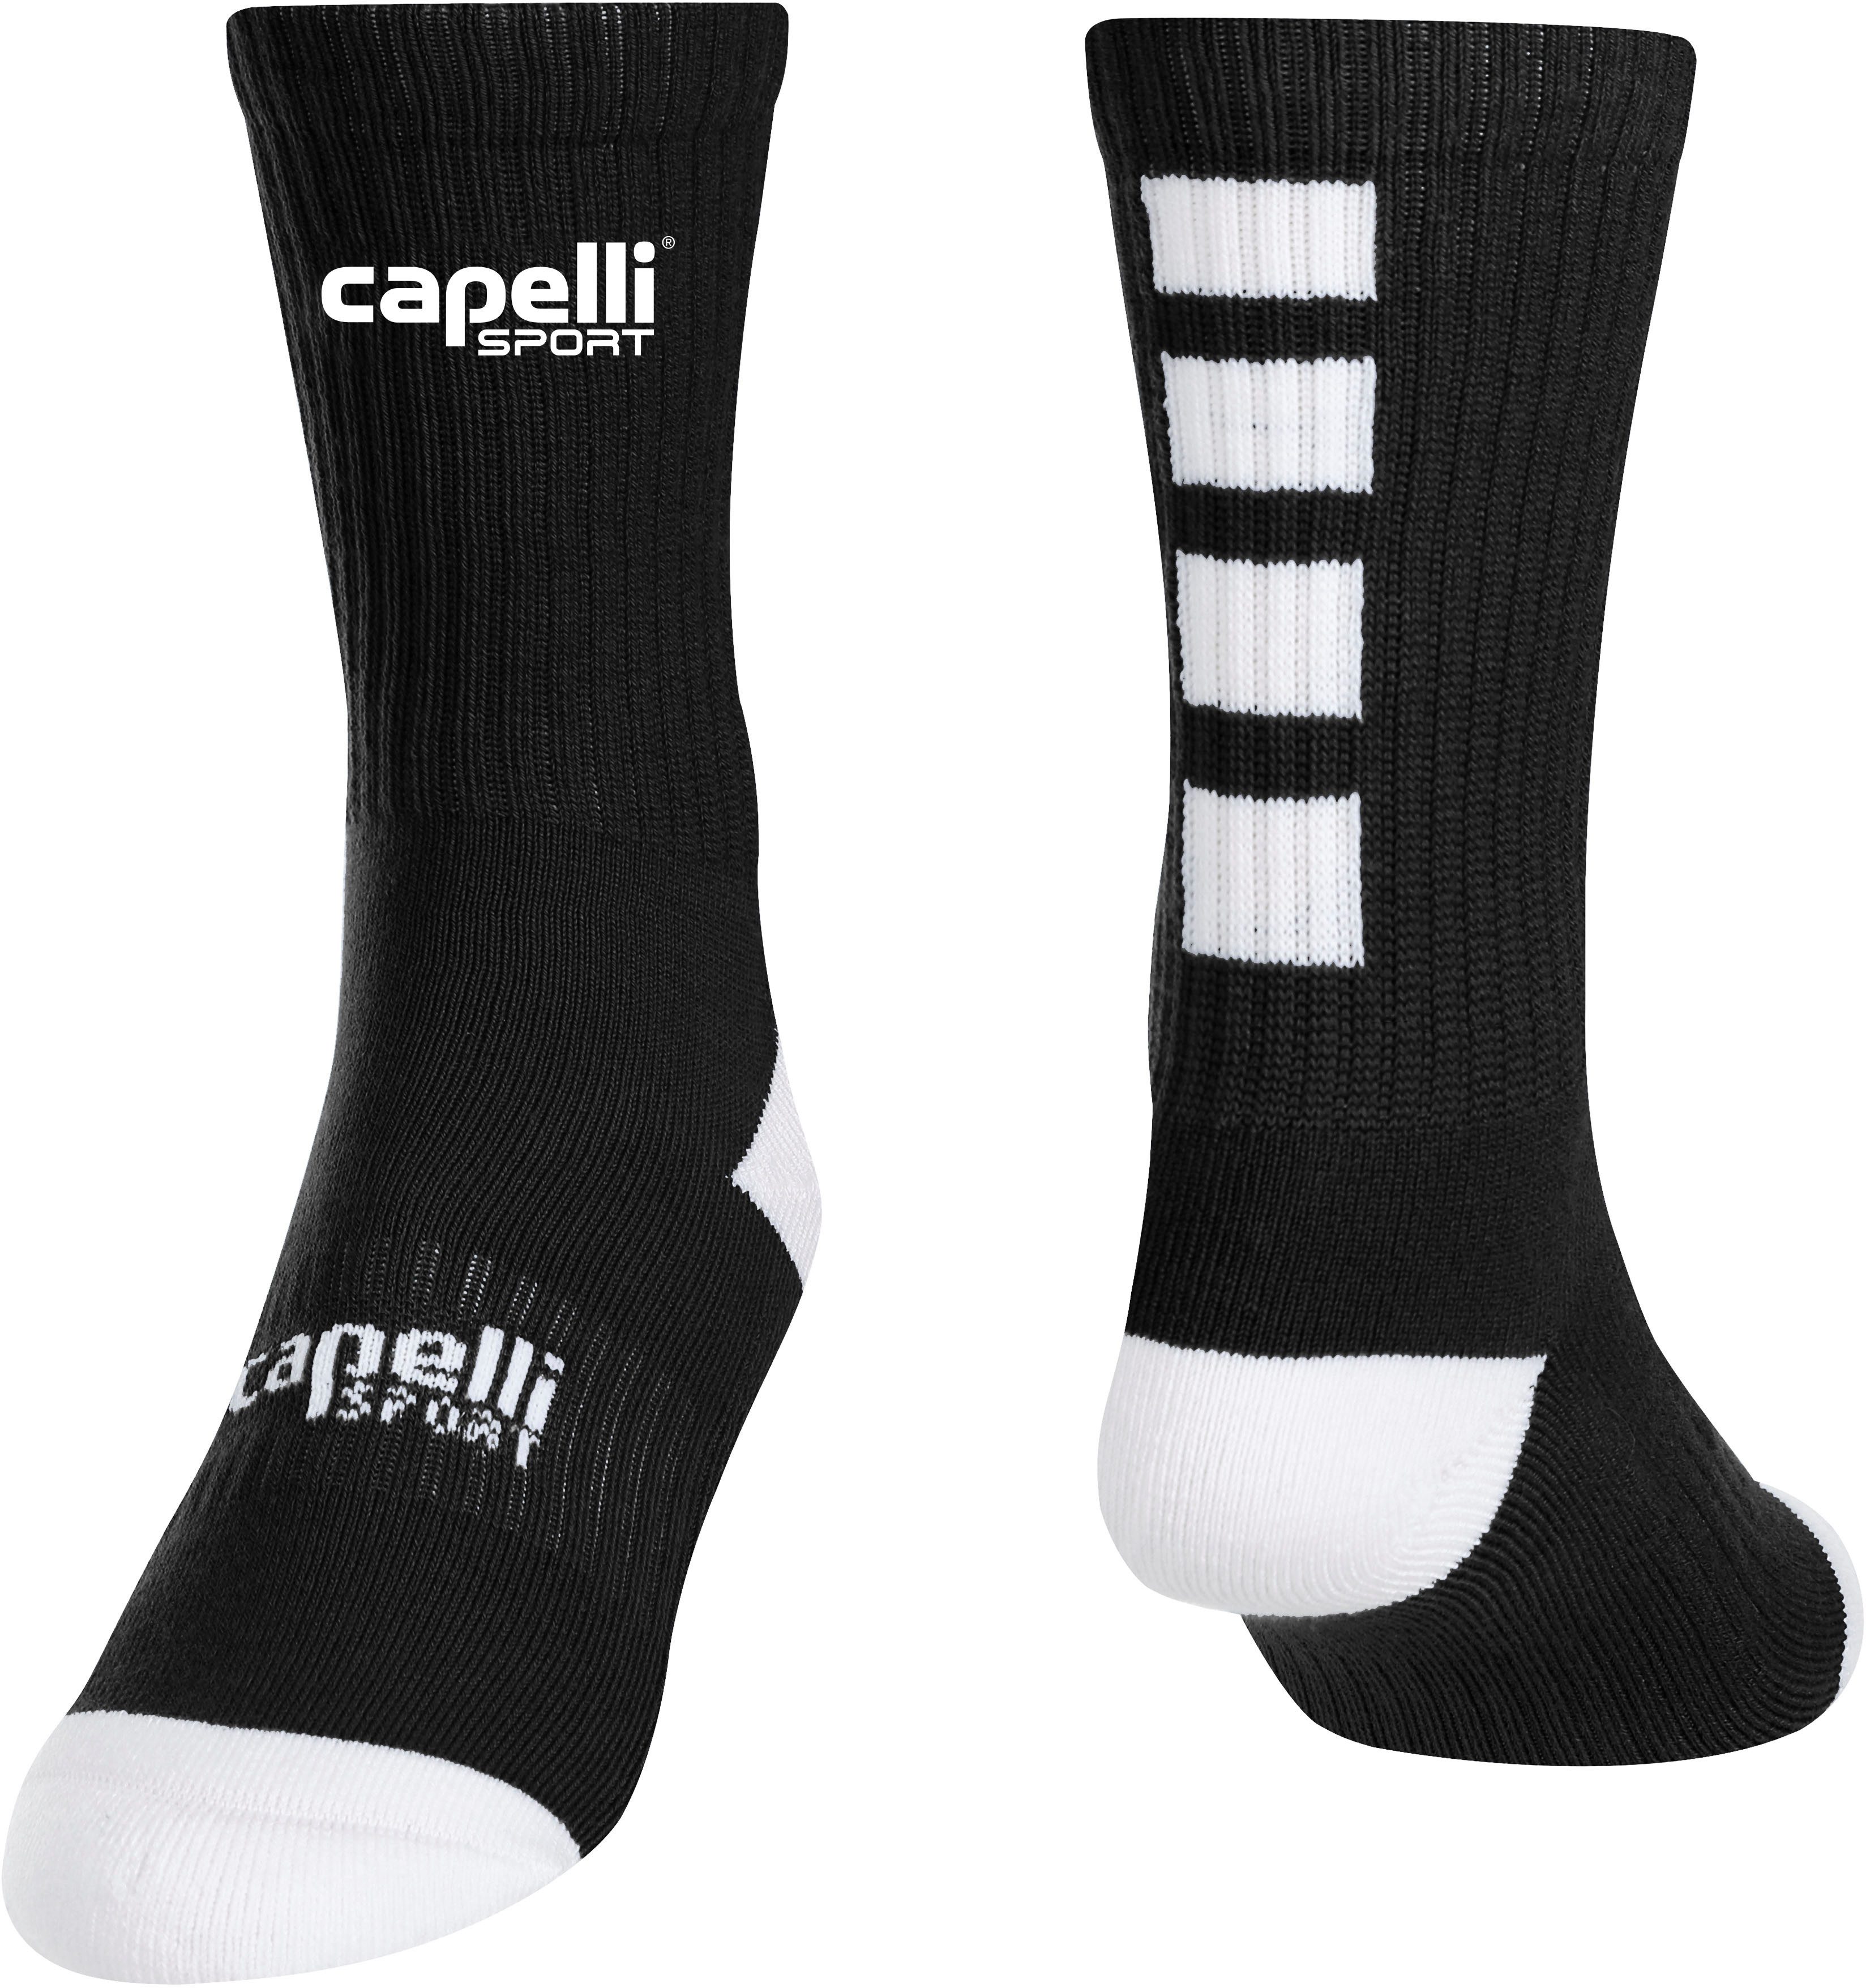 Capelli Sport Sportsocken mit kontrastreichen Details